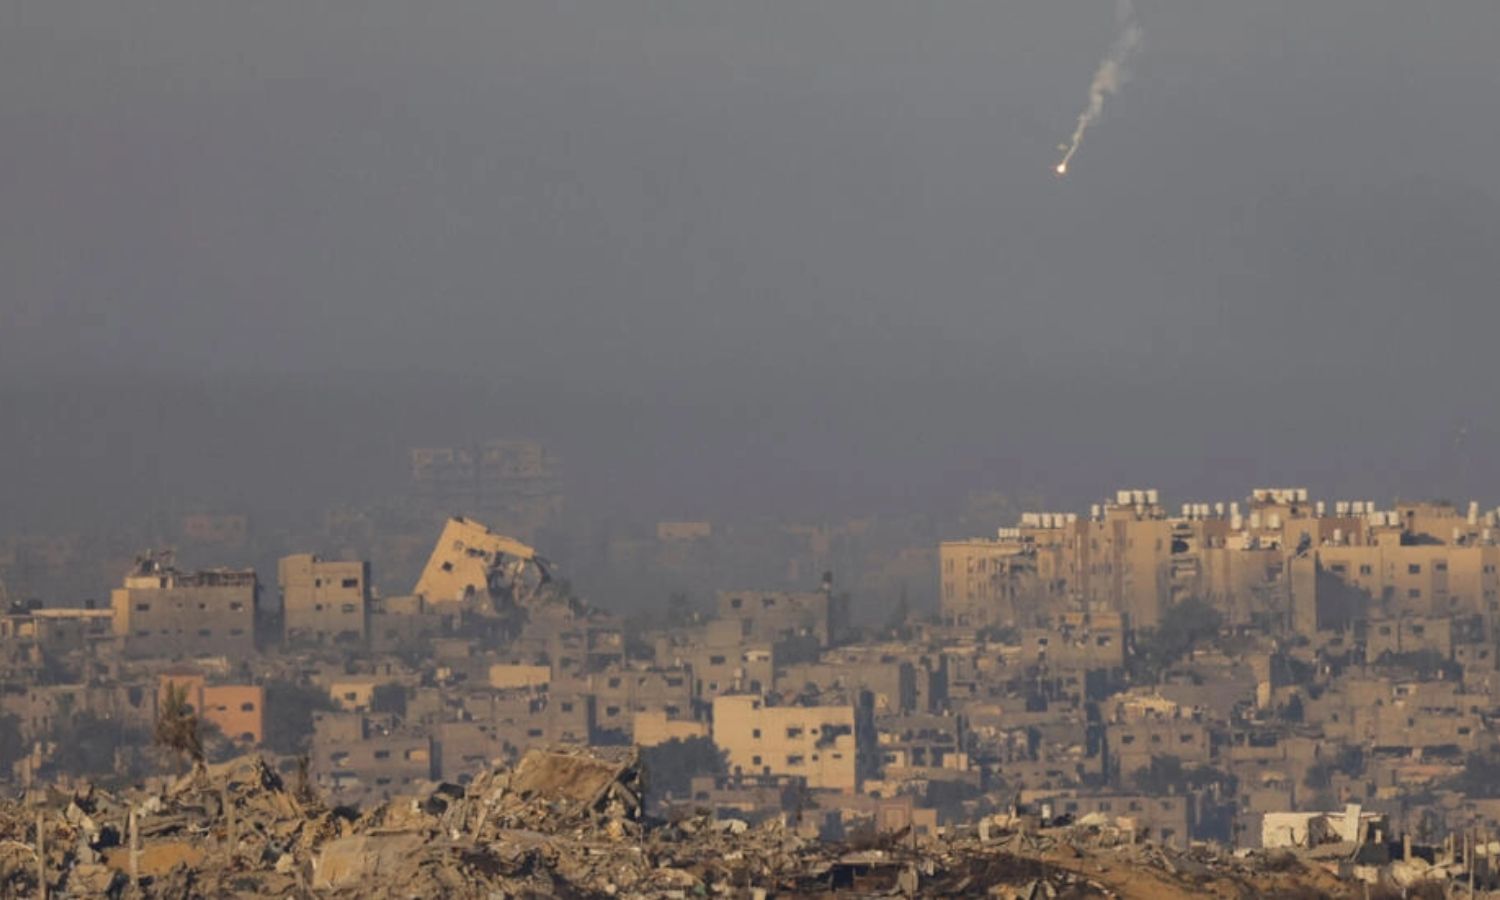 شعلة مضيئة تسقط فوق غزة، بعد انتهاء الهدنة المؤقتة بين إسرائيل وحركة "حماس" الفلسطينية- 3 كانون الأول 2023 (رويترز)